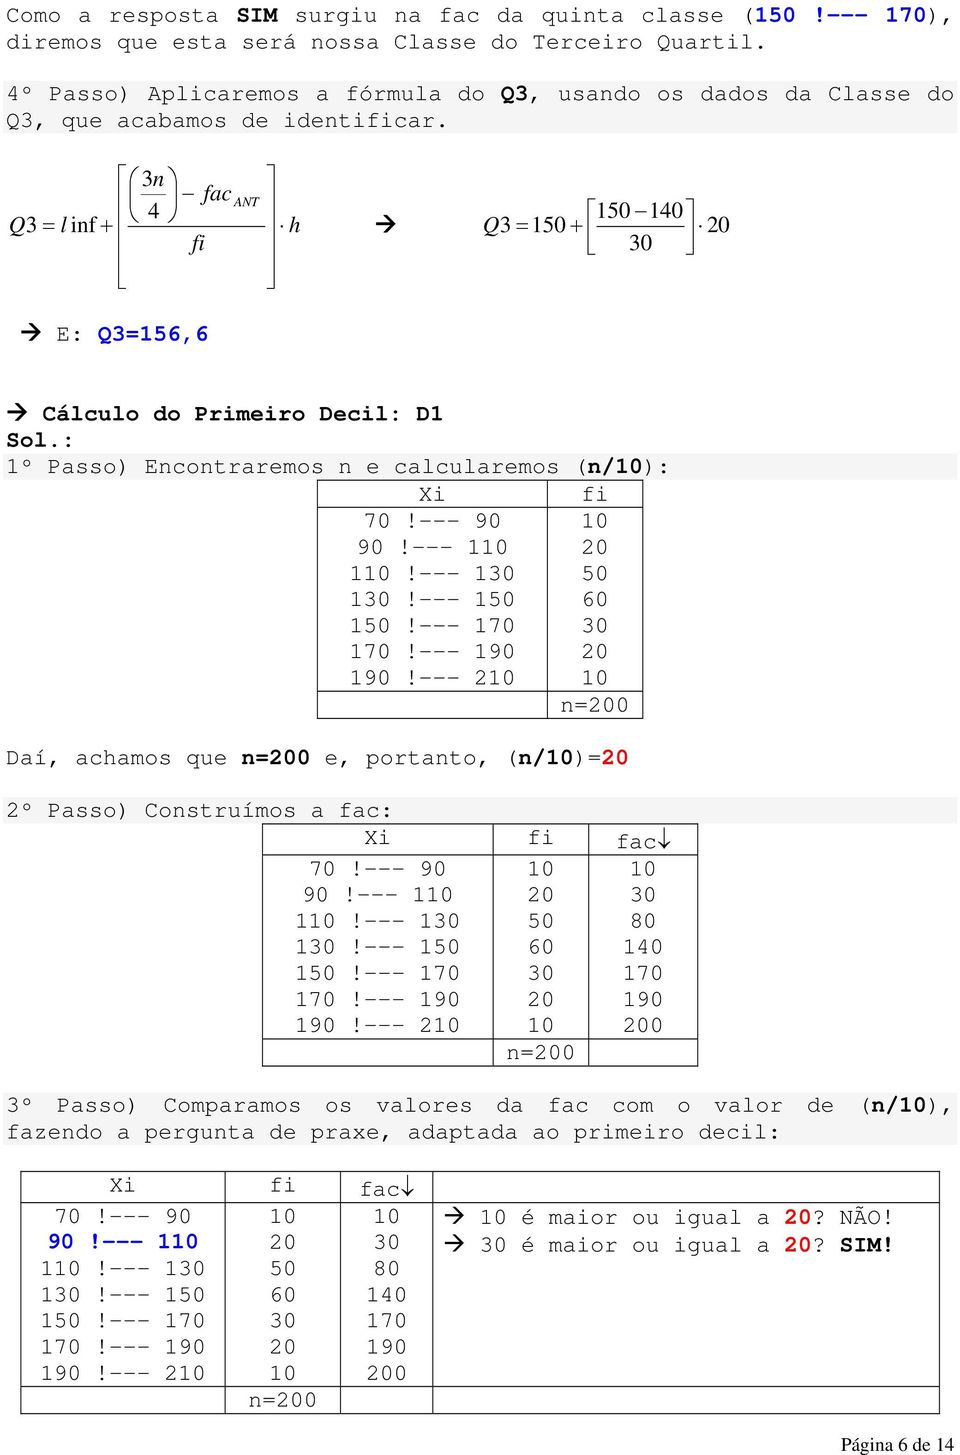 3 fac ANT Q l 1 10 3 = if + h Q 3 = 1 + fi E: Q3=156,6 Cálculo do Primeiro Decil: D1 Sol.: 1º Passo) Ecotraremos e calcularemos (/): Xi 90!--- 